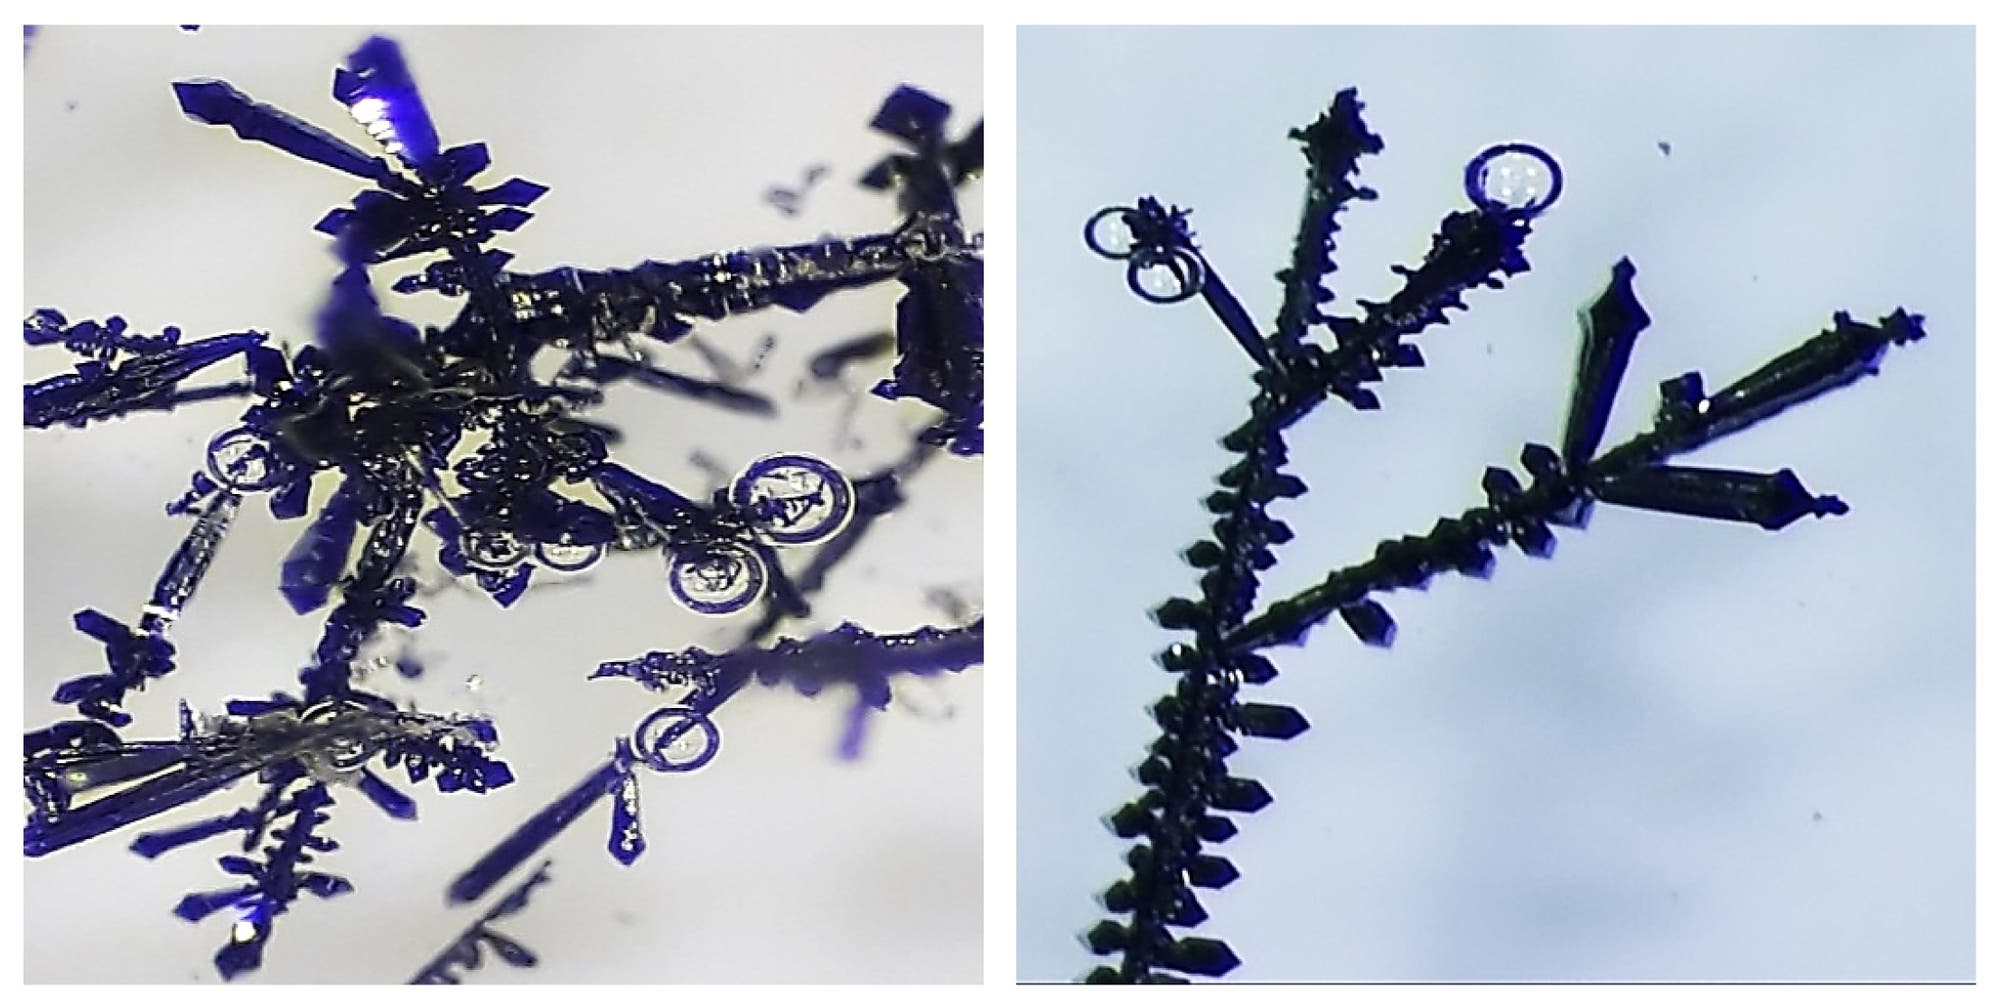 Zwei Aufnahmen von Kristallbäumchen unter dem Mikroskop, an den Spitzen bilden sich Gasbläschen